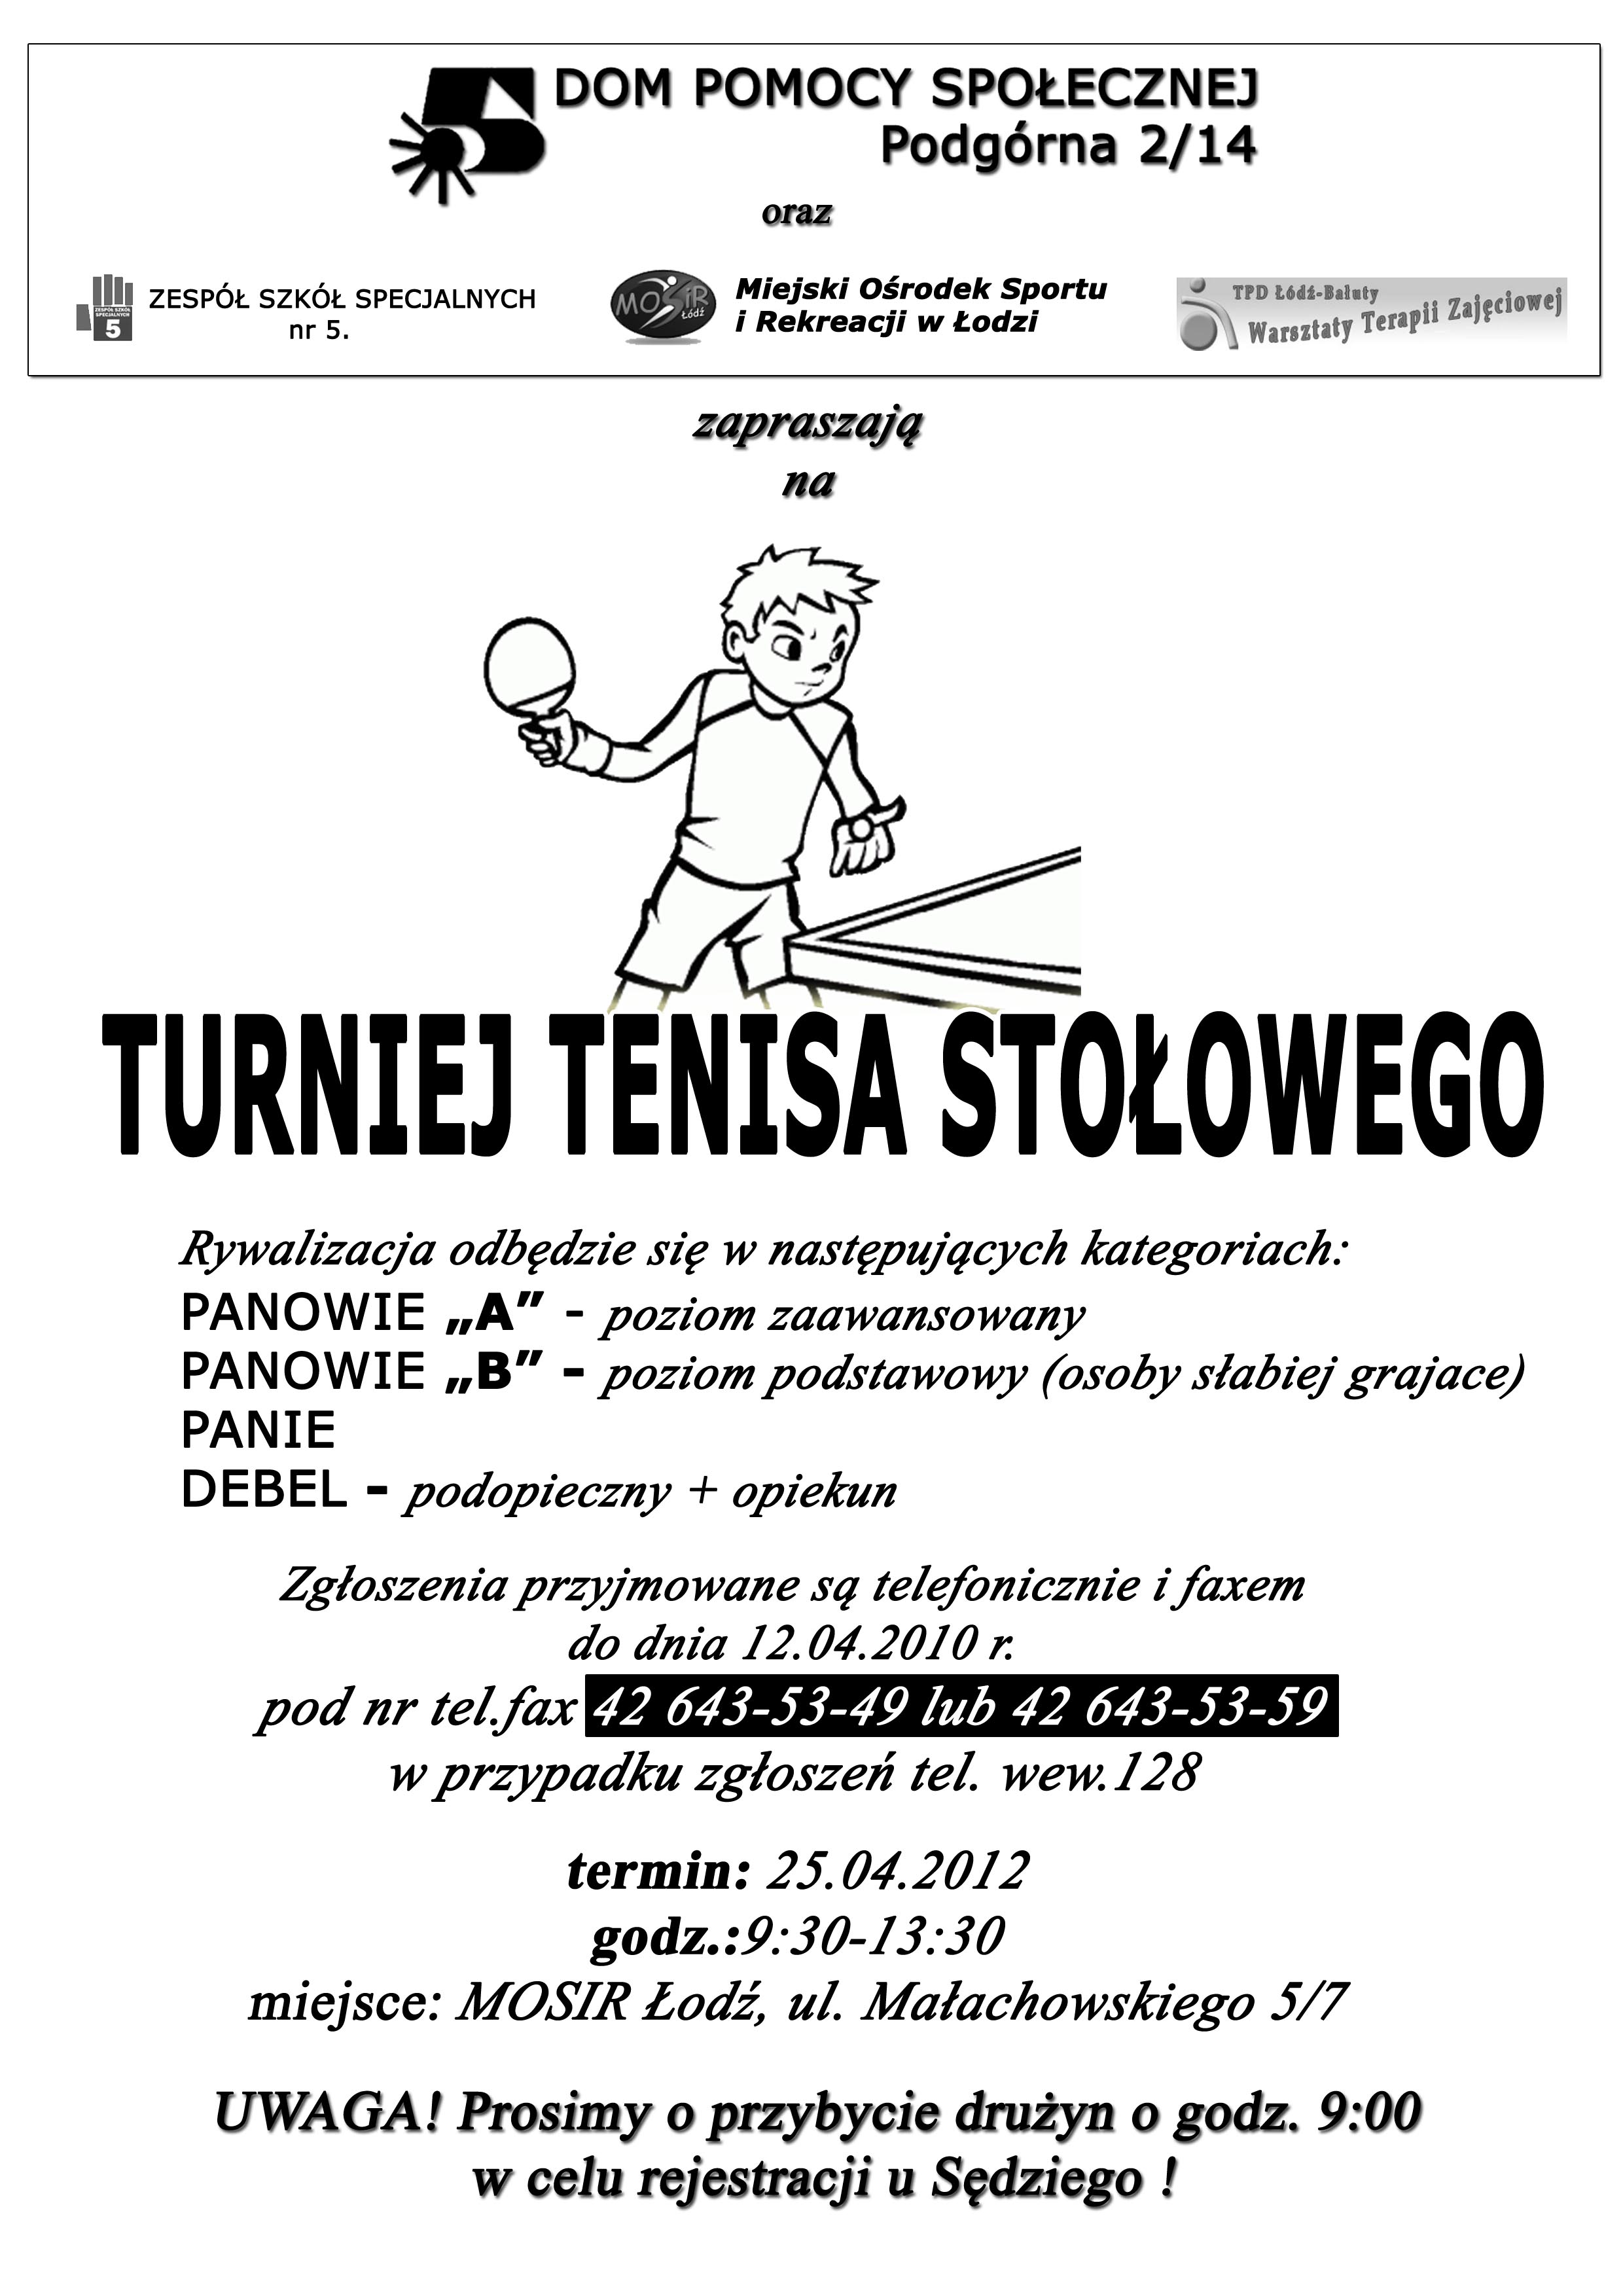 turniej_tenisa_stoowego_2012